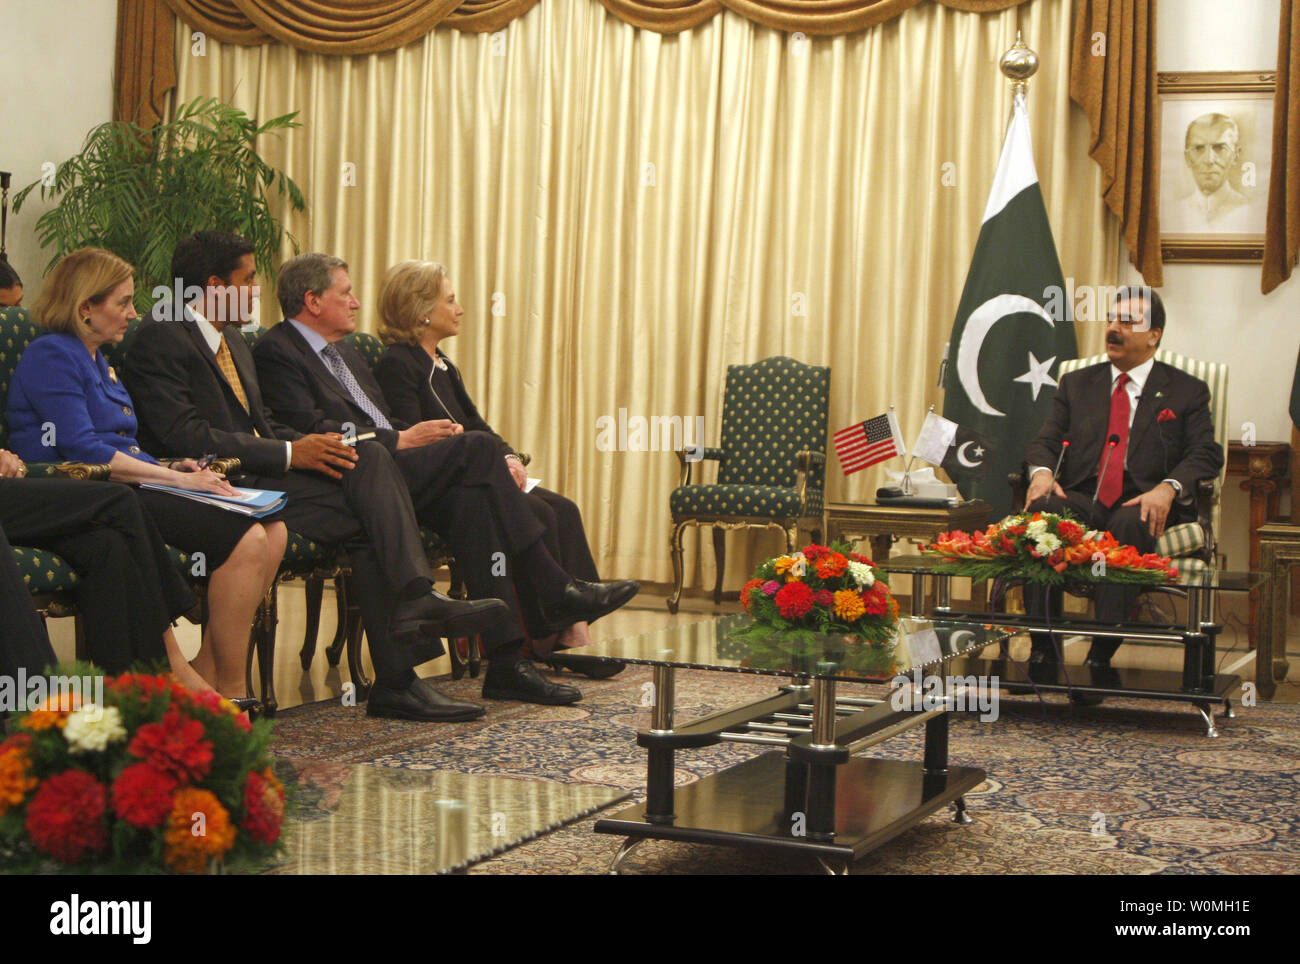 La Secretaria de Estado norteamericana, Hillary Clinton (4-L) se encuentra en una reunión con el Primer Ministro de Pakistán Yousuf Raza Gilani (R) en la casa del Primer Ministro en Islamabad el 18 de julio de 2010. Hillary Clinton ha llegado a Pakistán para conversaciones estratégicas encaminadas a fortalecer los lazos bilaterales y asegurar el más firme apoyo a la guerra en Afganistán. UPI/Sajjad Ali Qureshi Foto de stock